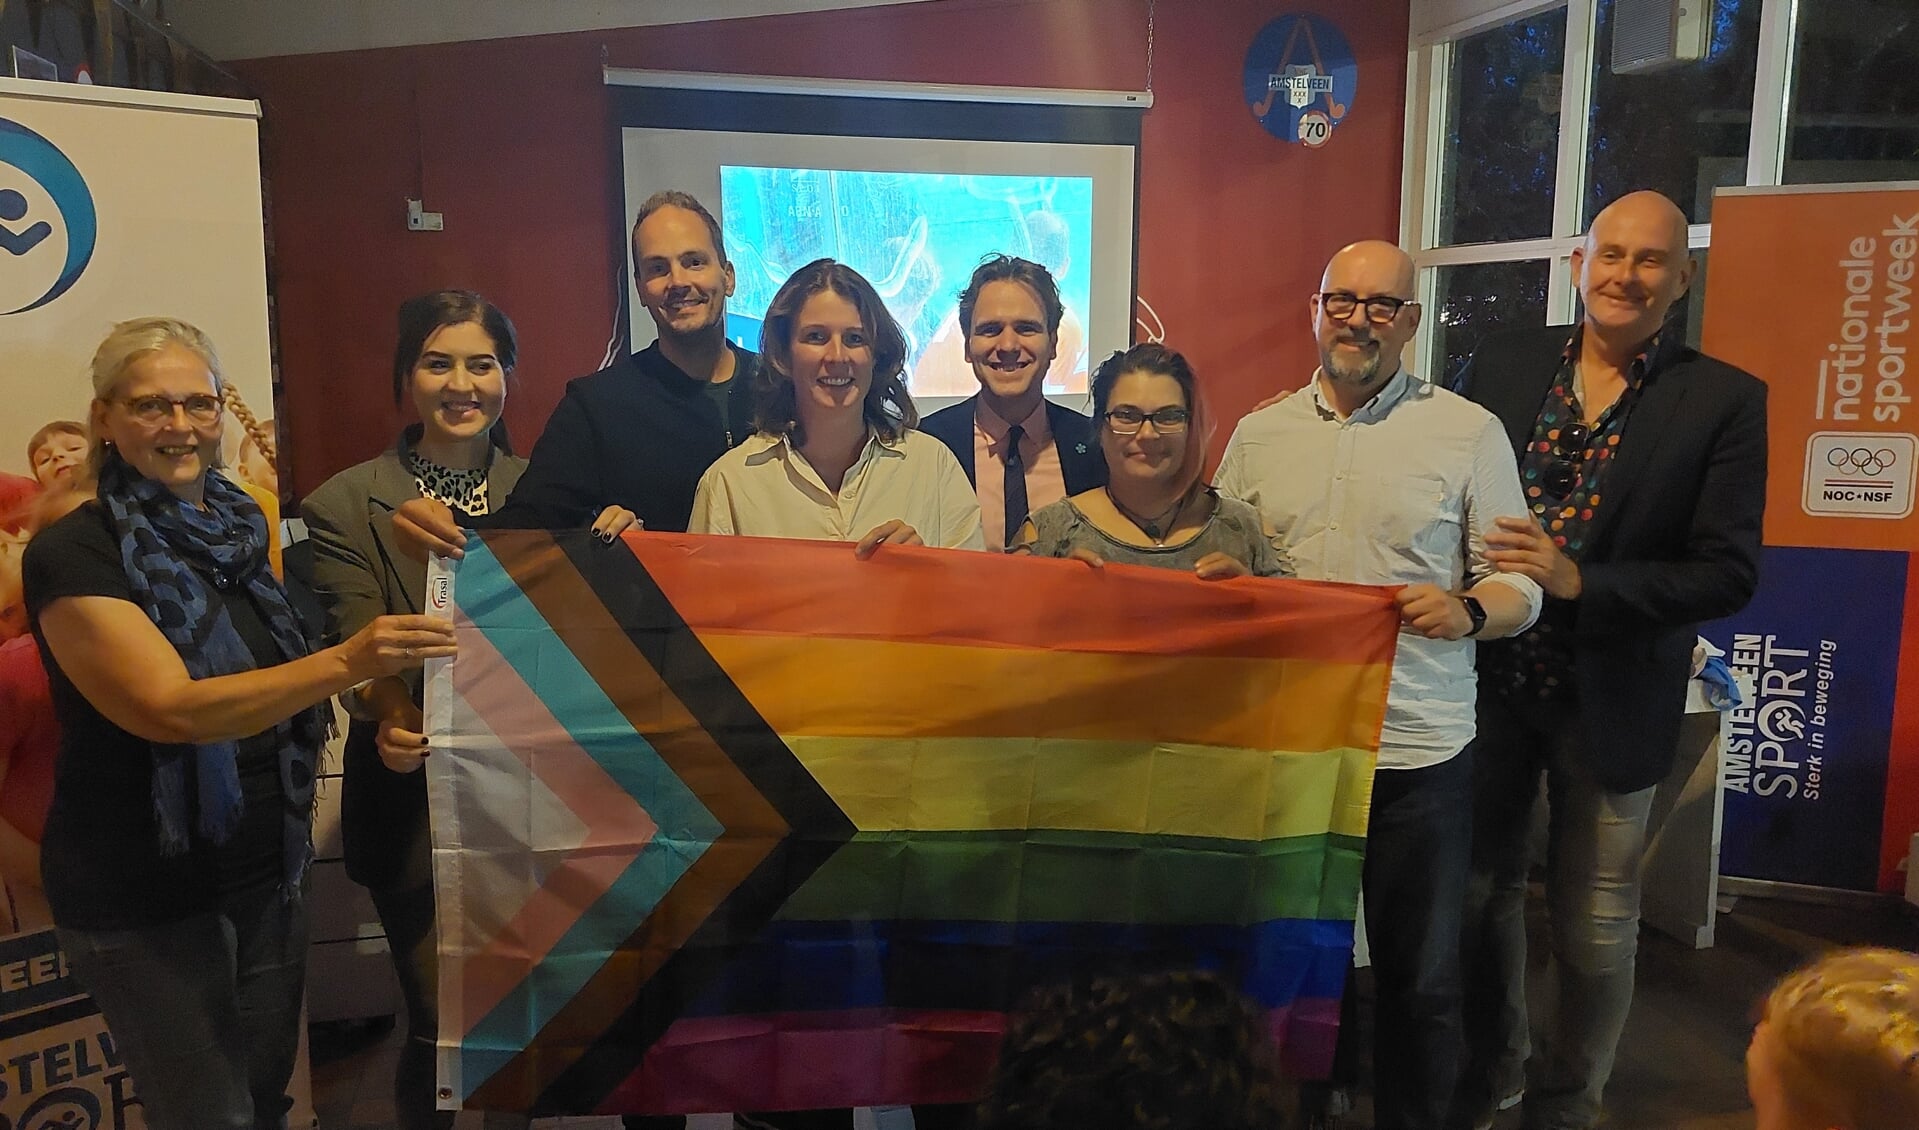 Vertegenwoordigers van de vijf pilot-verengingen poseren met de regenboogvlag uit de All Together Challenge Box